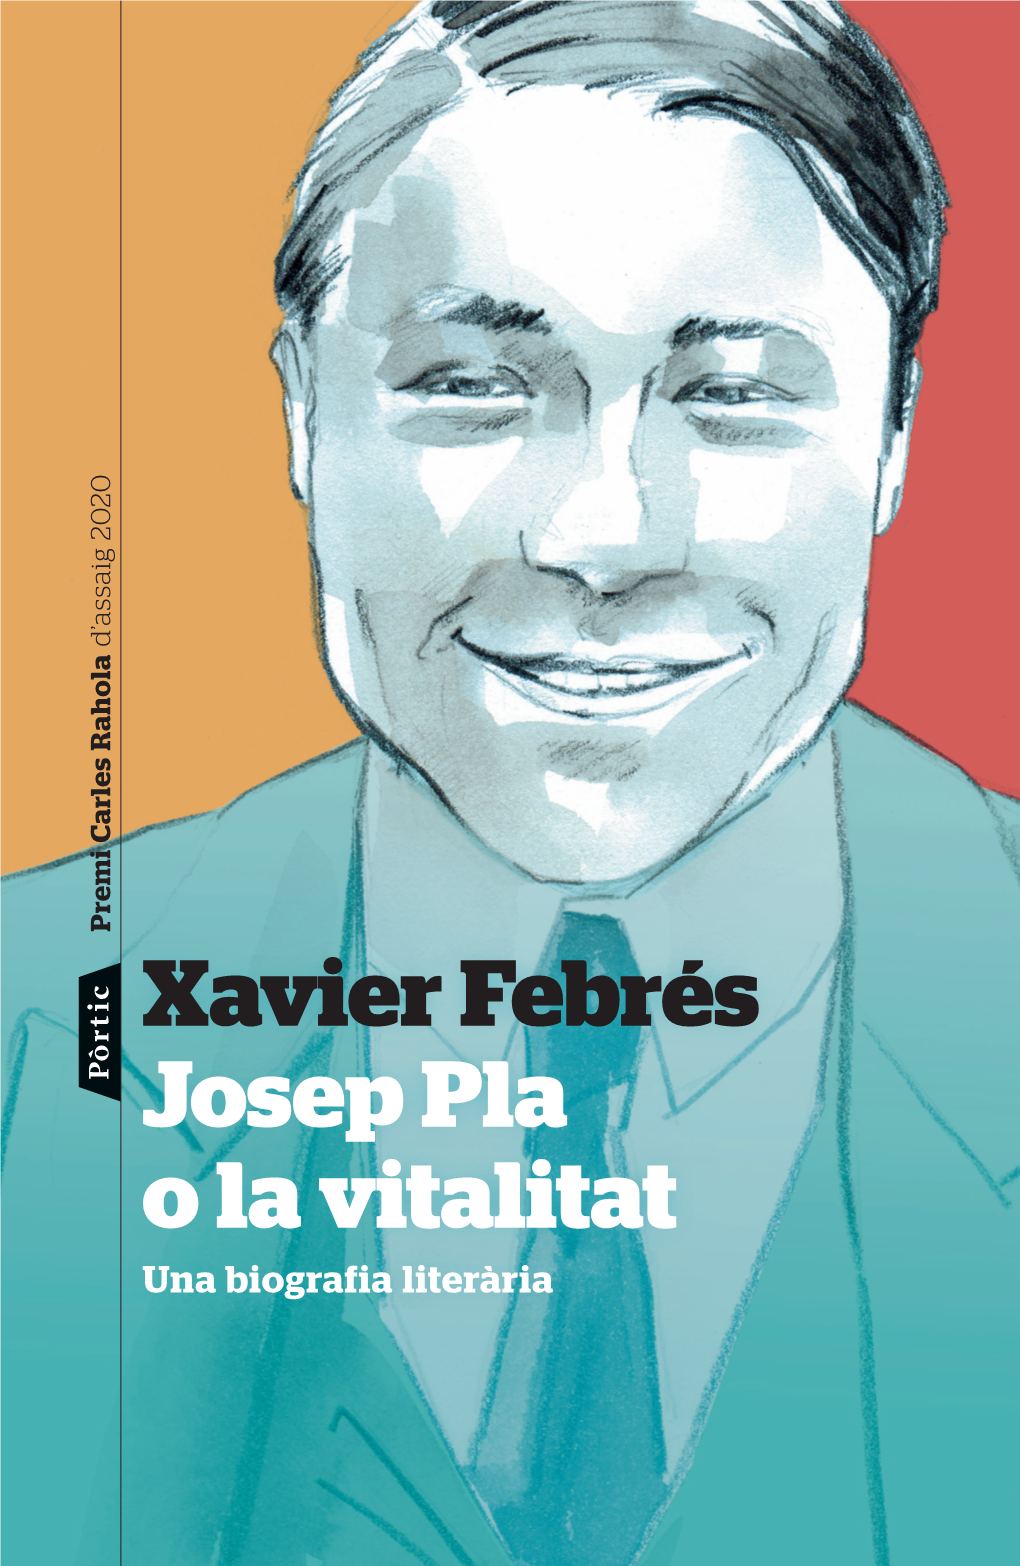 Xavier Febrés Josep Pla O La Vitalitat